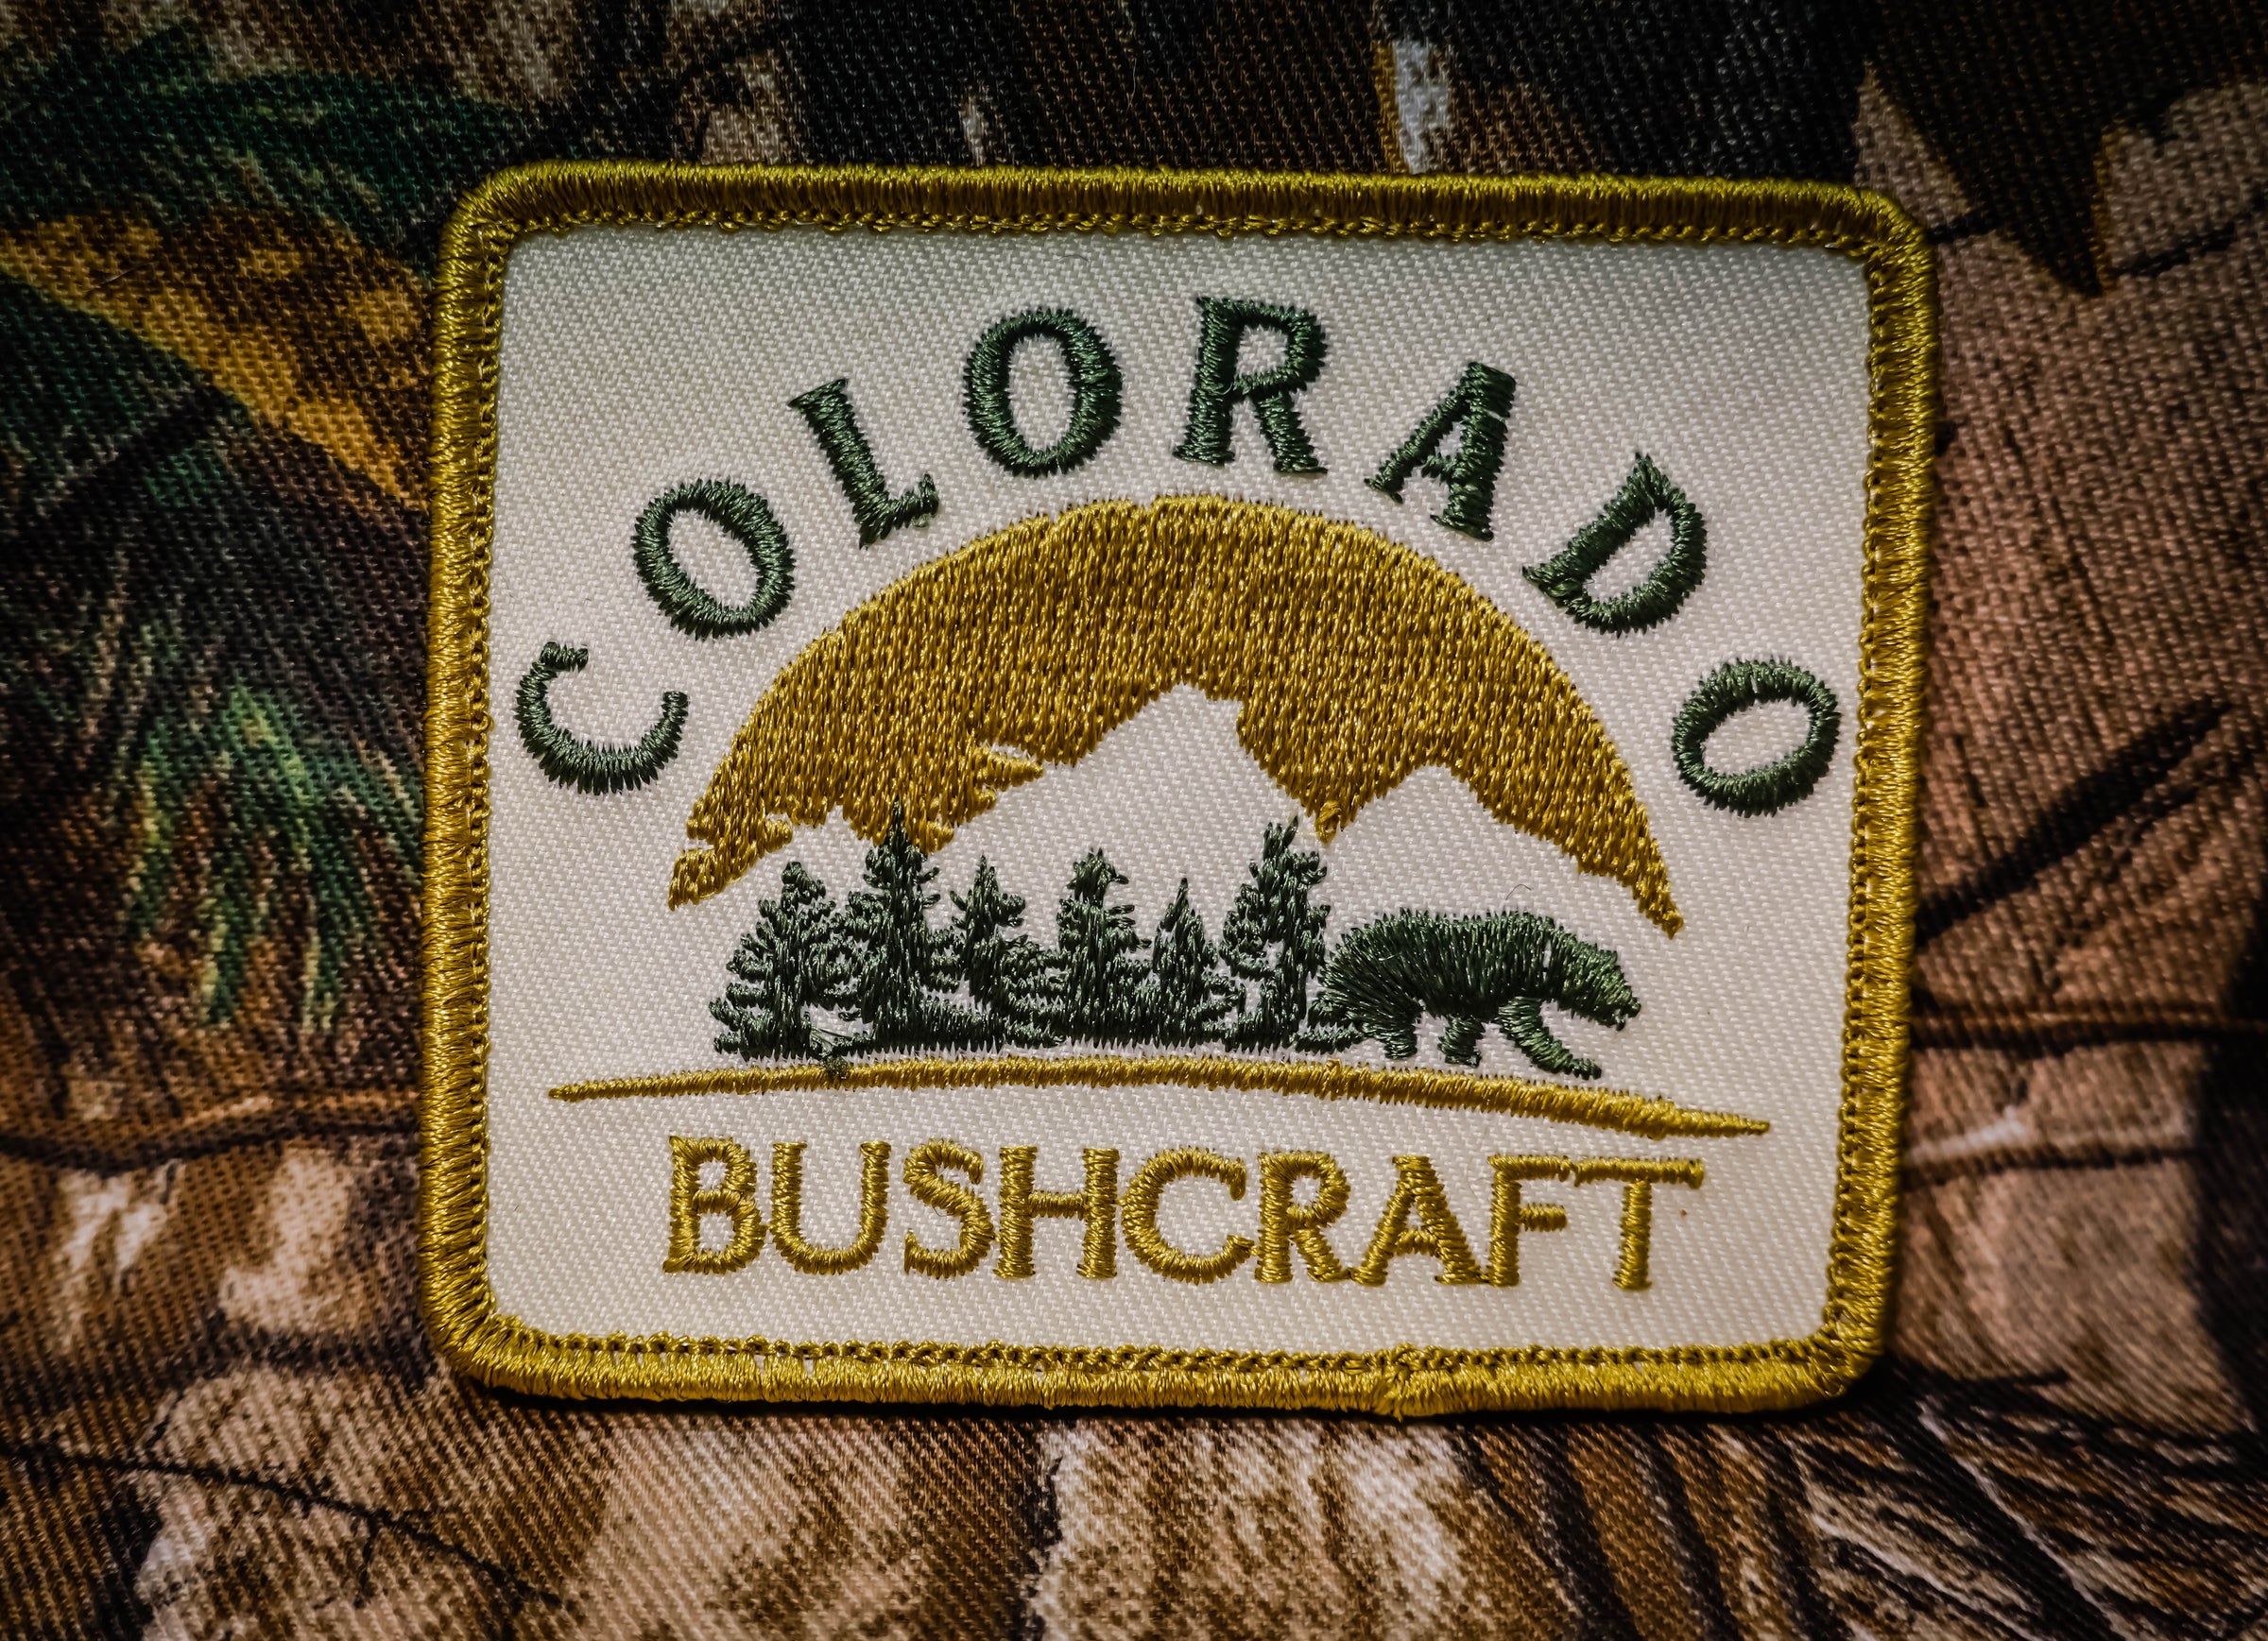 Other Bushcraft Gear – Colorado Bushcraft